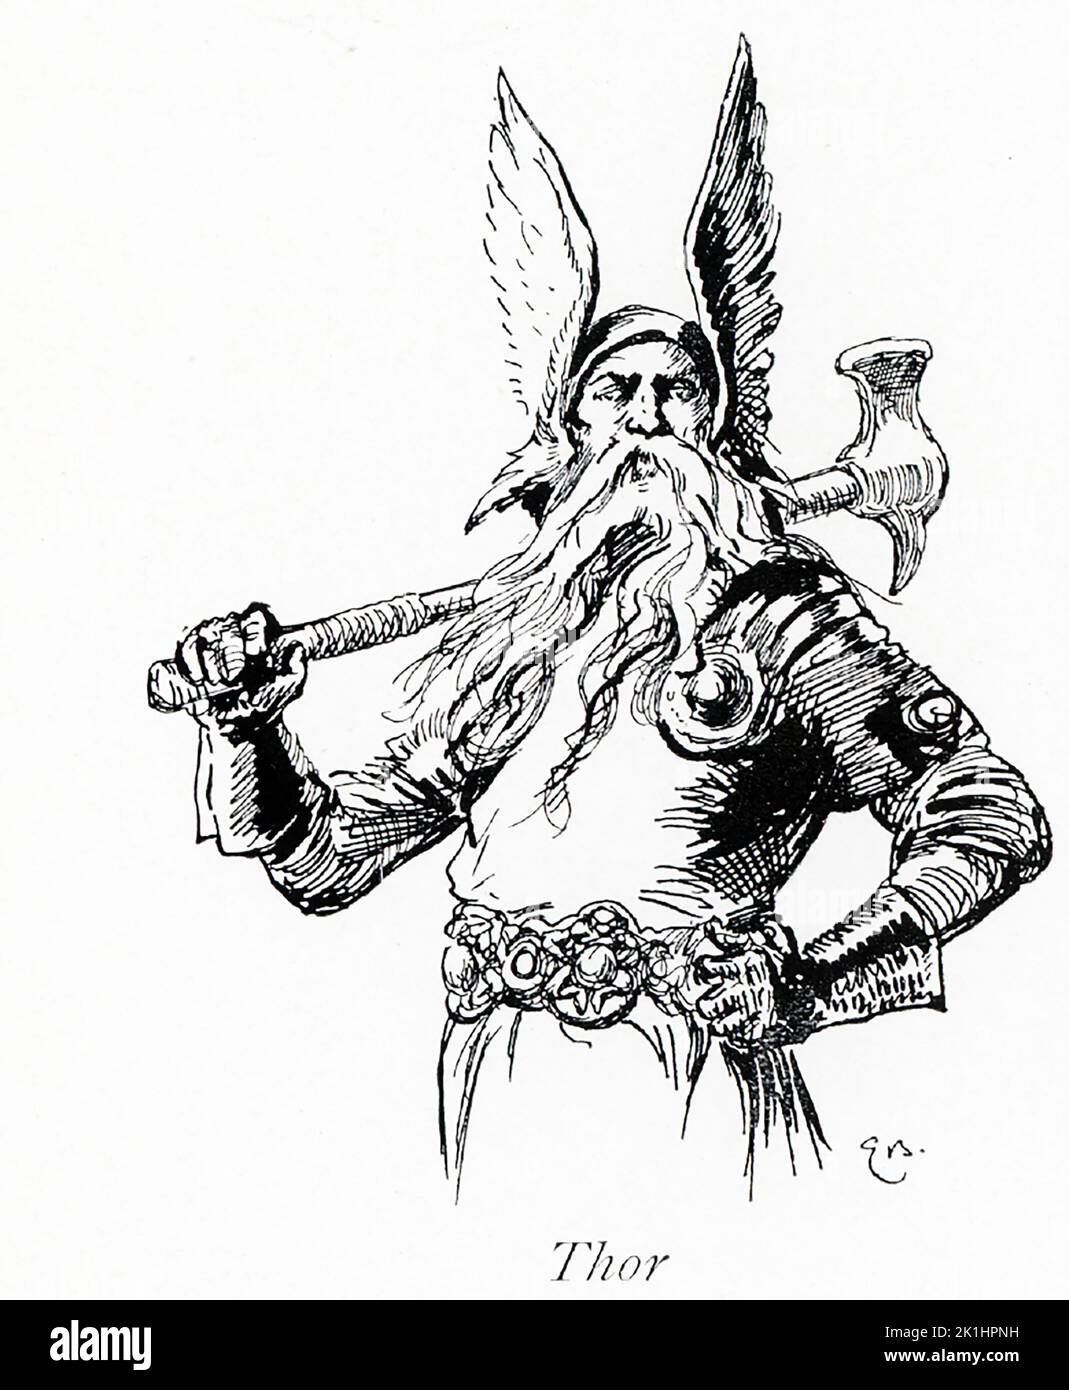 Thor war der gott des Donners und somit der gott der Macht und des Krieges. Als Sohn Odins hatte er einen magischen Hammer namens Mjollnir, der zu ihm zurückkehrte, einen Gürtel voller Kraft und eiserne Handschuhe. Sein Wagen wurde von zwei Ziegen gezogen – Tanngrisni ("GAP-tooth") und Tanngnost ("Zahnschleifer"). Diese Abbildung stammt aus dem Jahr 1913. Stockfoto